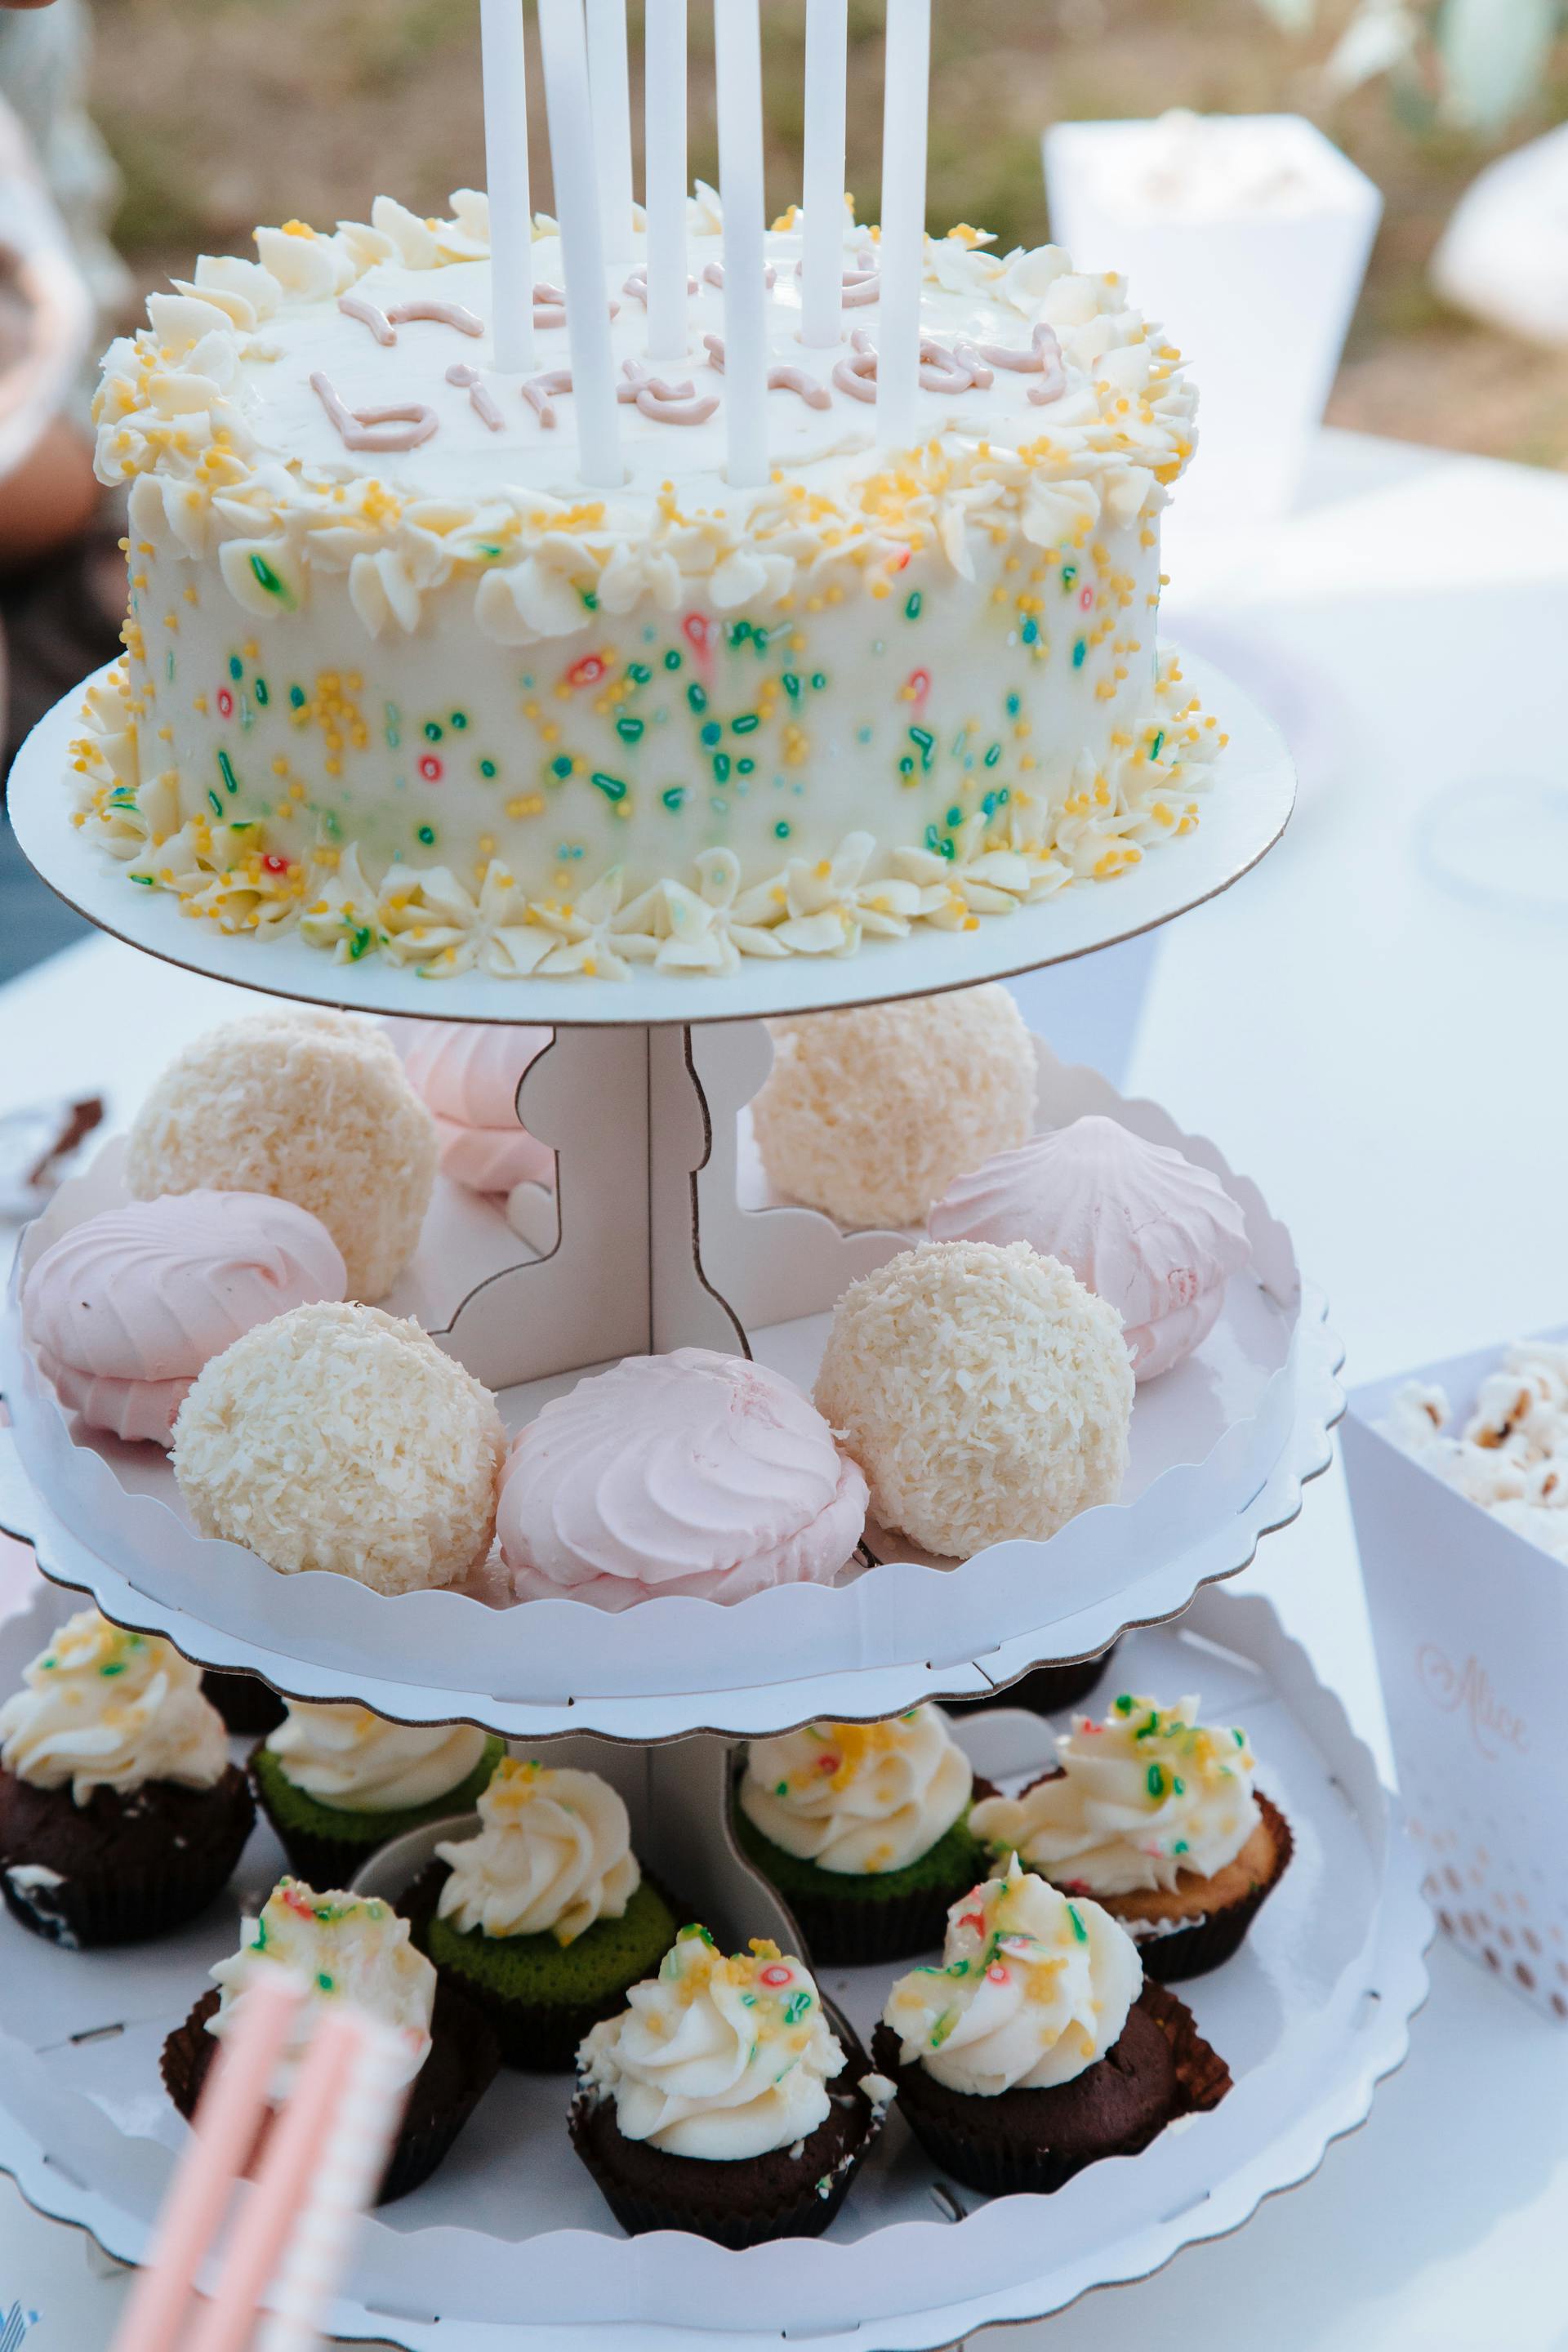 Cupcakes et gâteau d'anniversaire sur un présentoir à gâteaux | Source : Pexels